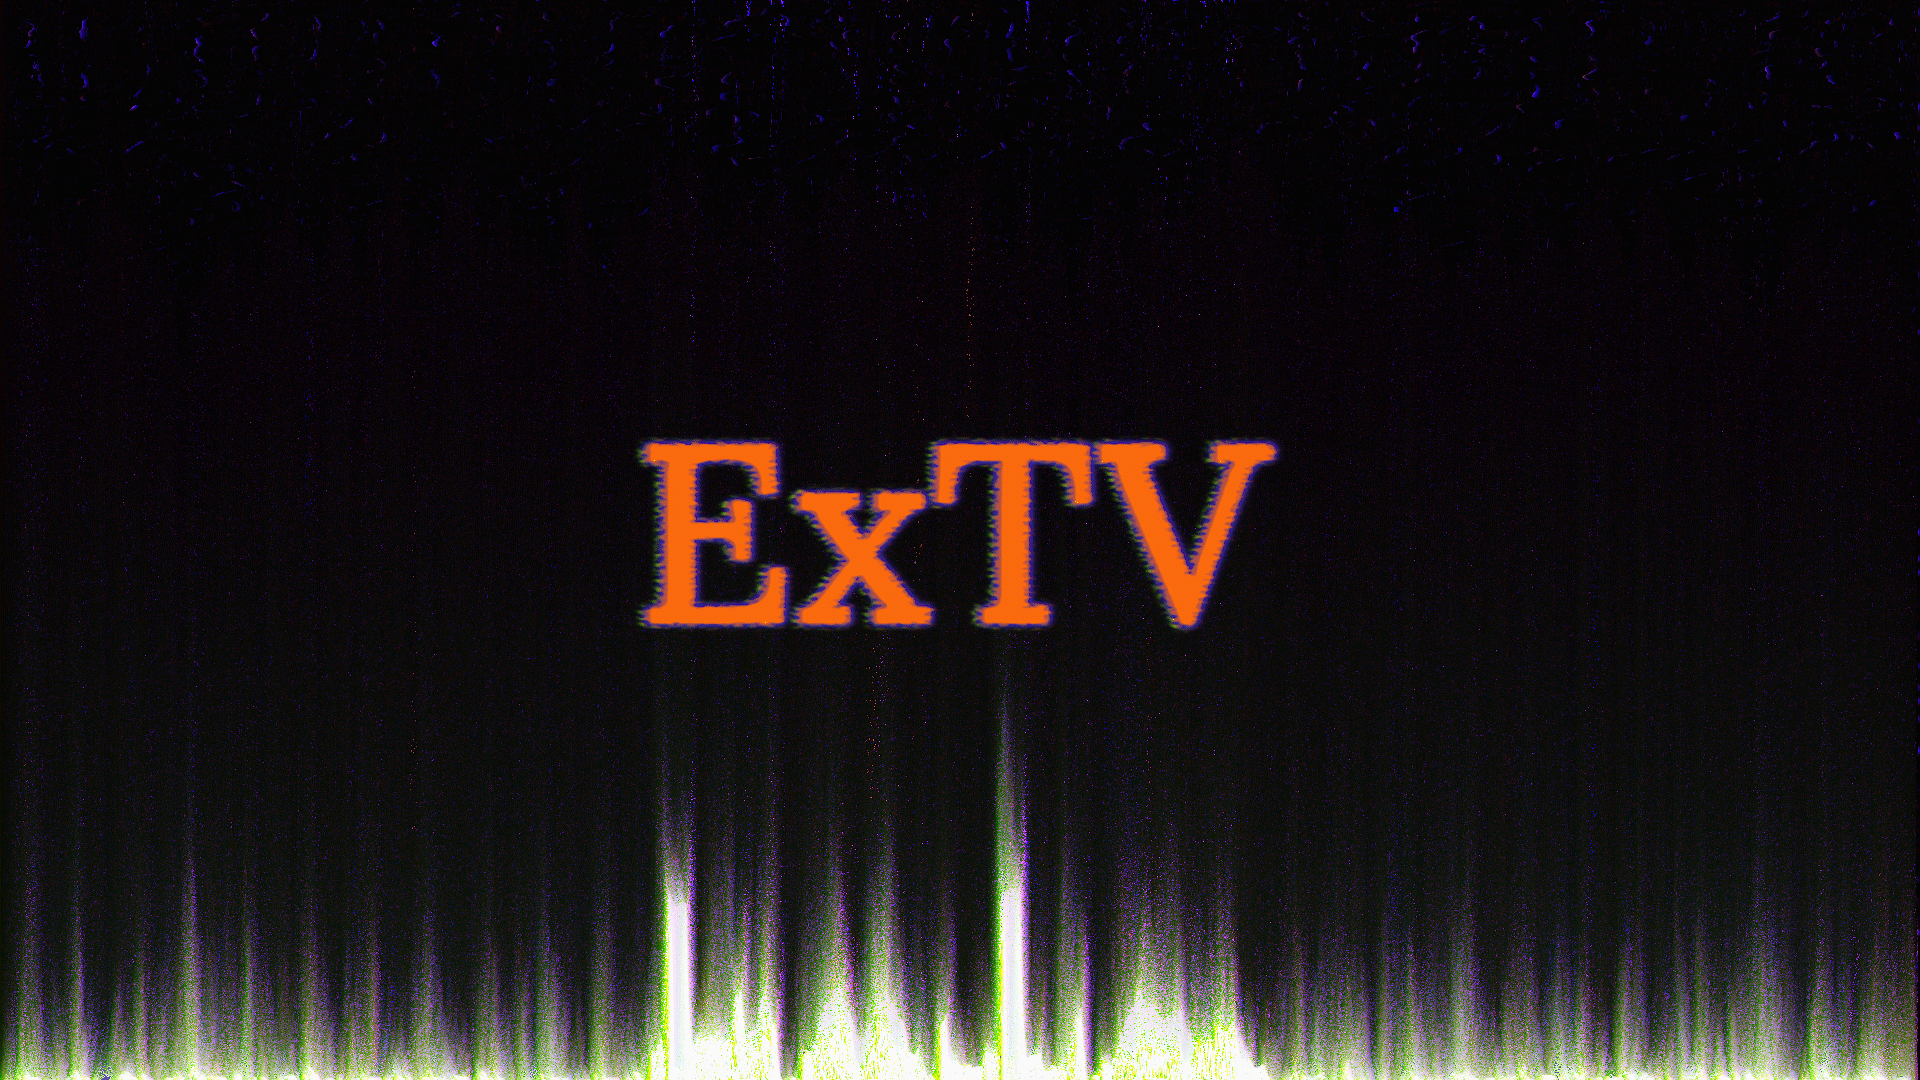 EXTV